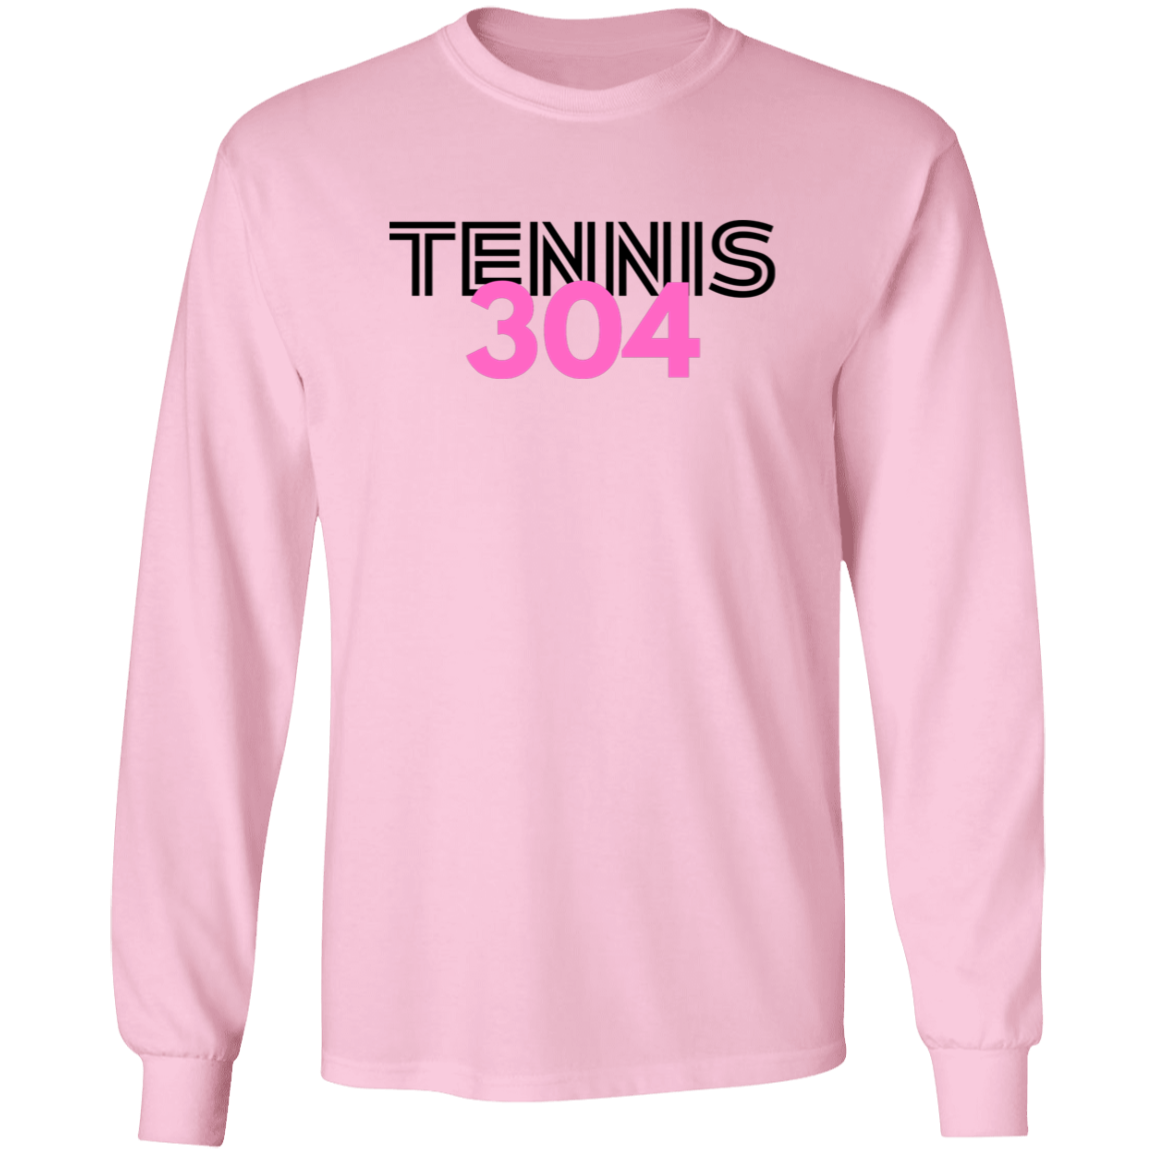 Tennis 304 Ultra Cotton Unisex Tee